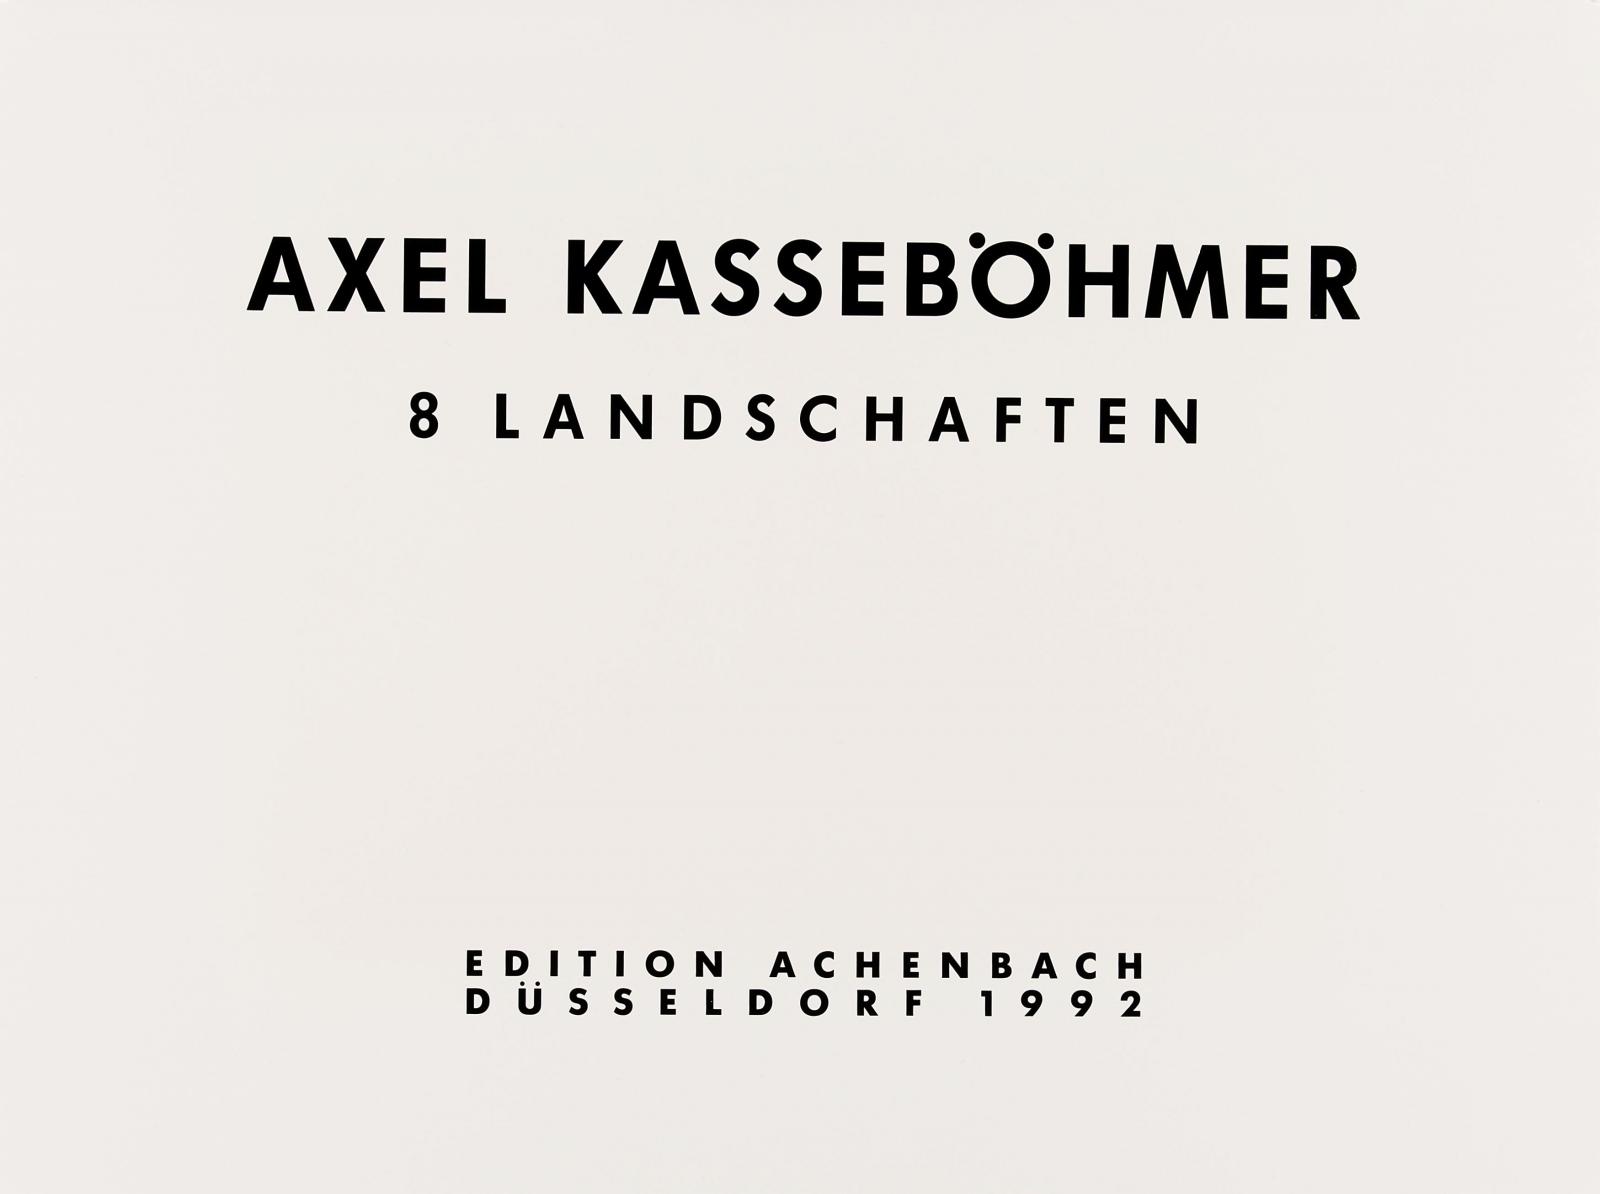 Axel Kasseboehmer - 8 Landschaften, 57902-4061, Van Ham Kunstauktionen